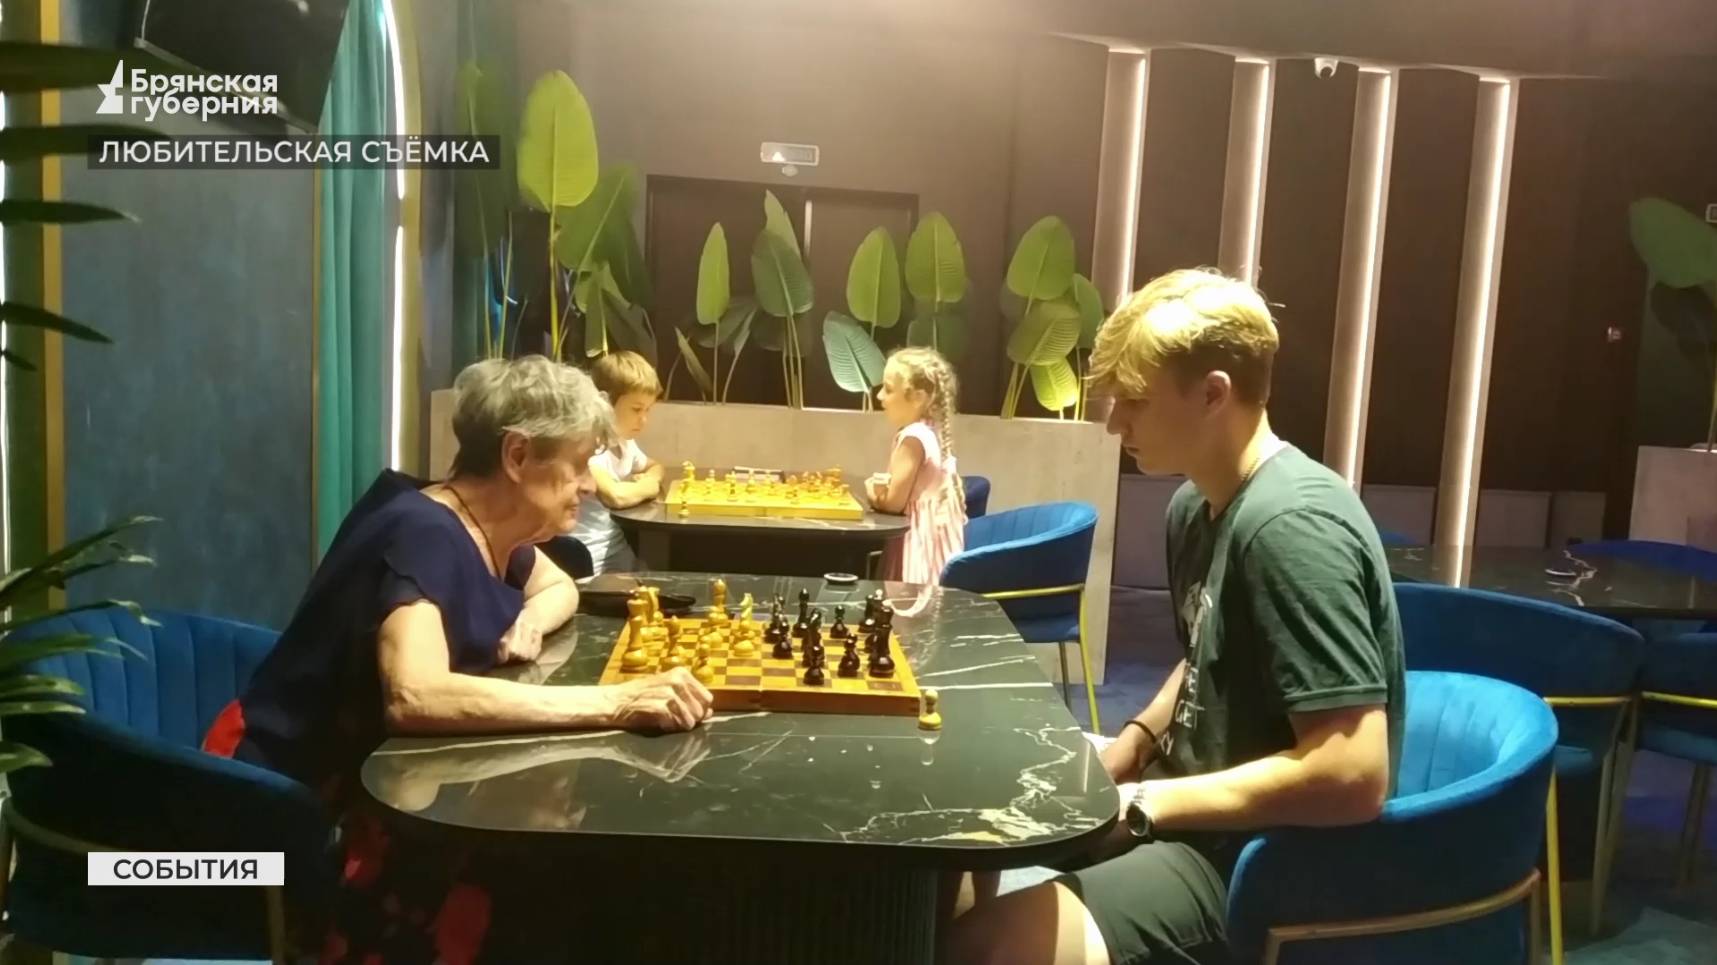 В Брянске появилось новое место притяжения для любителей шахмат